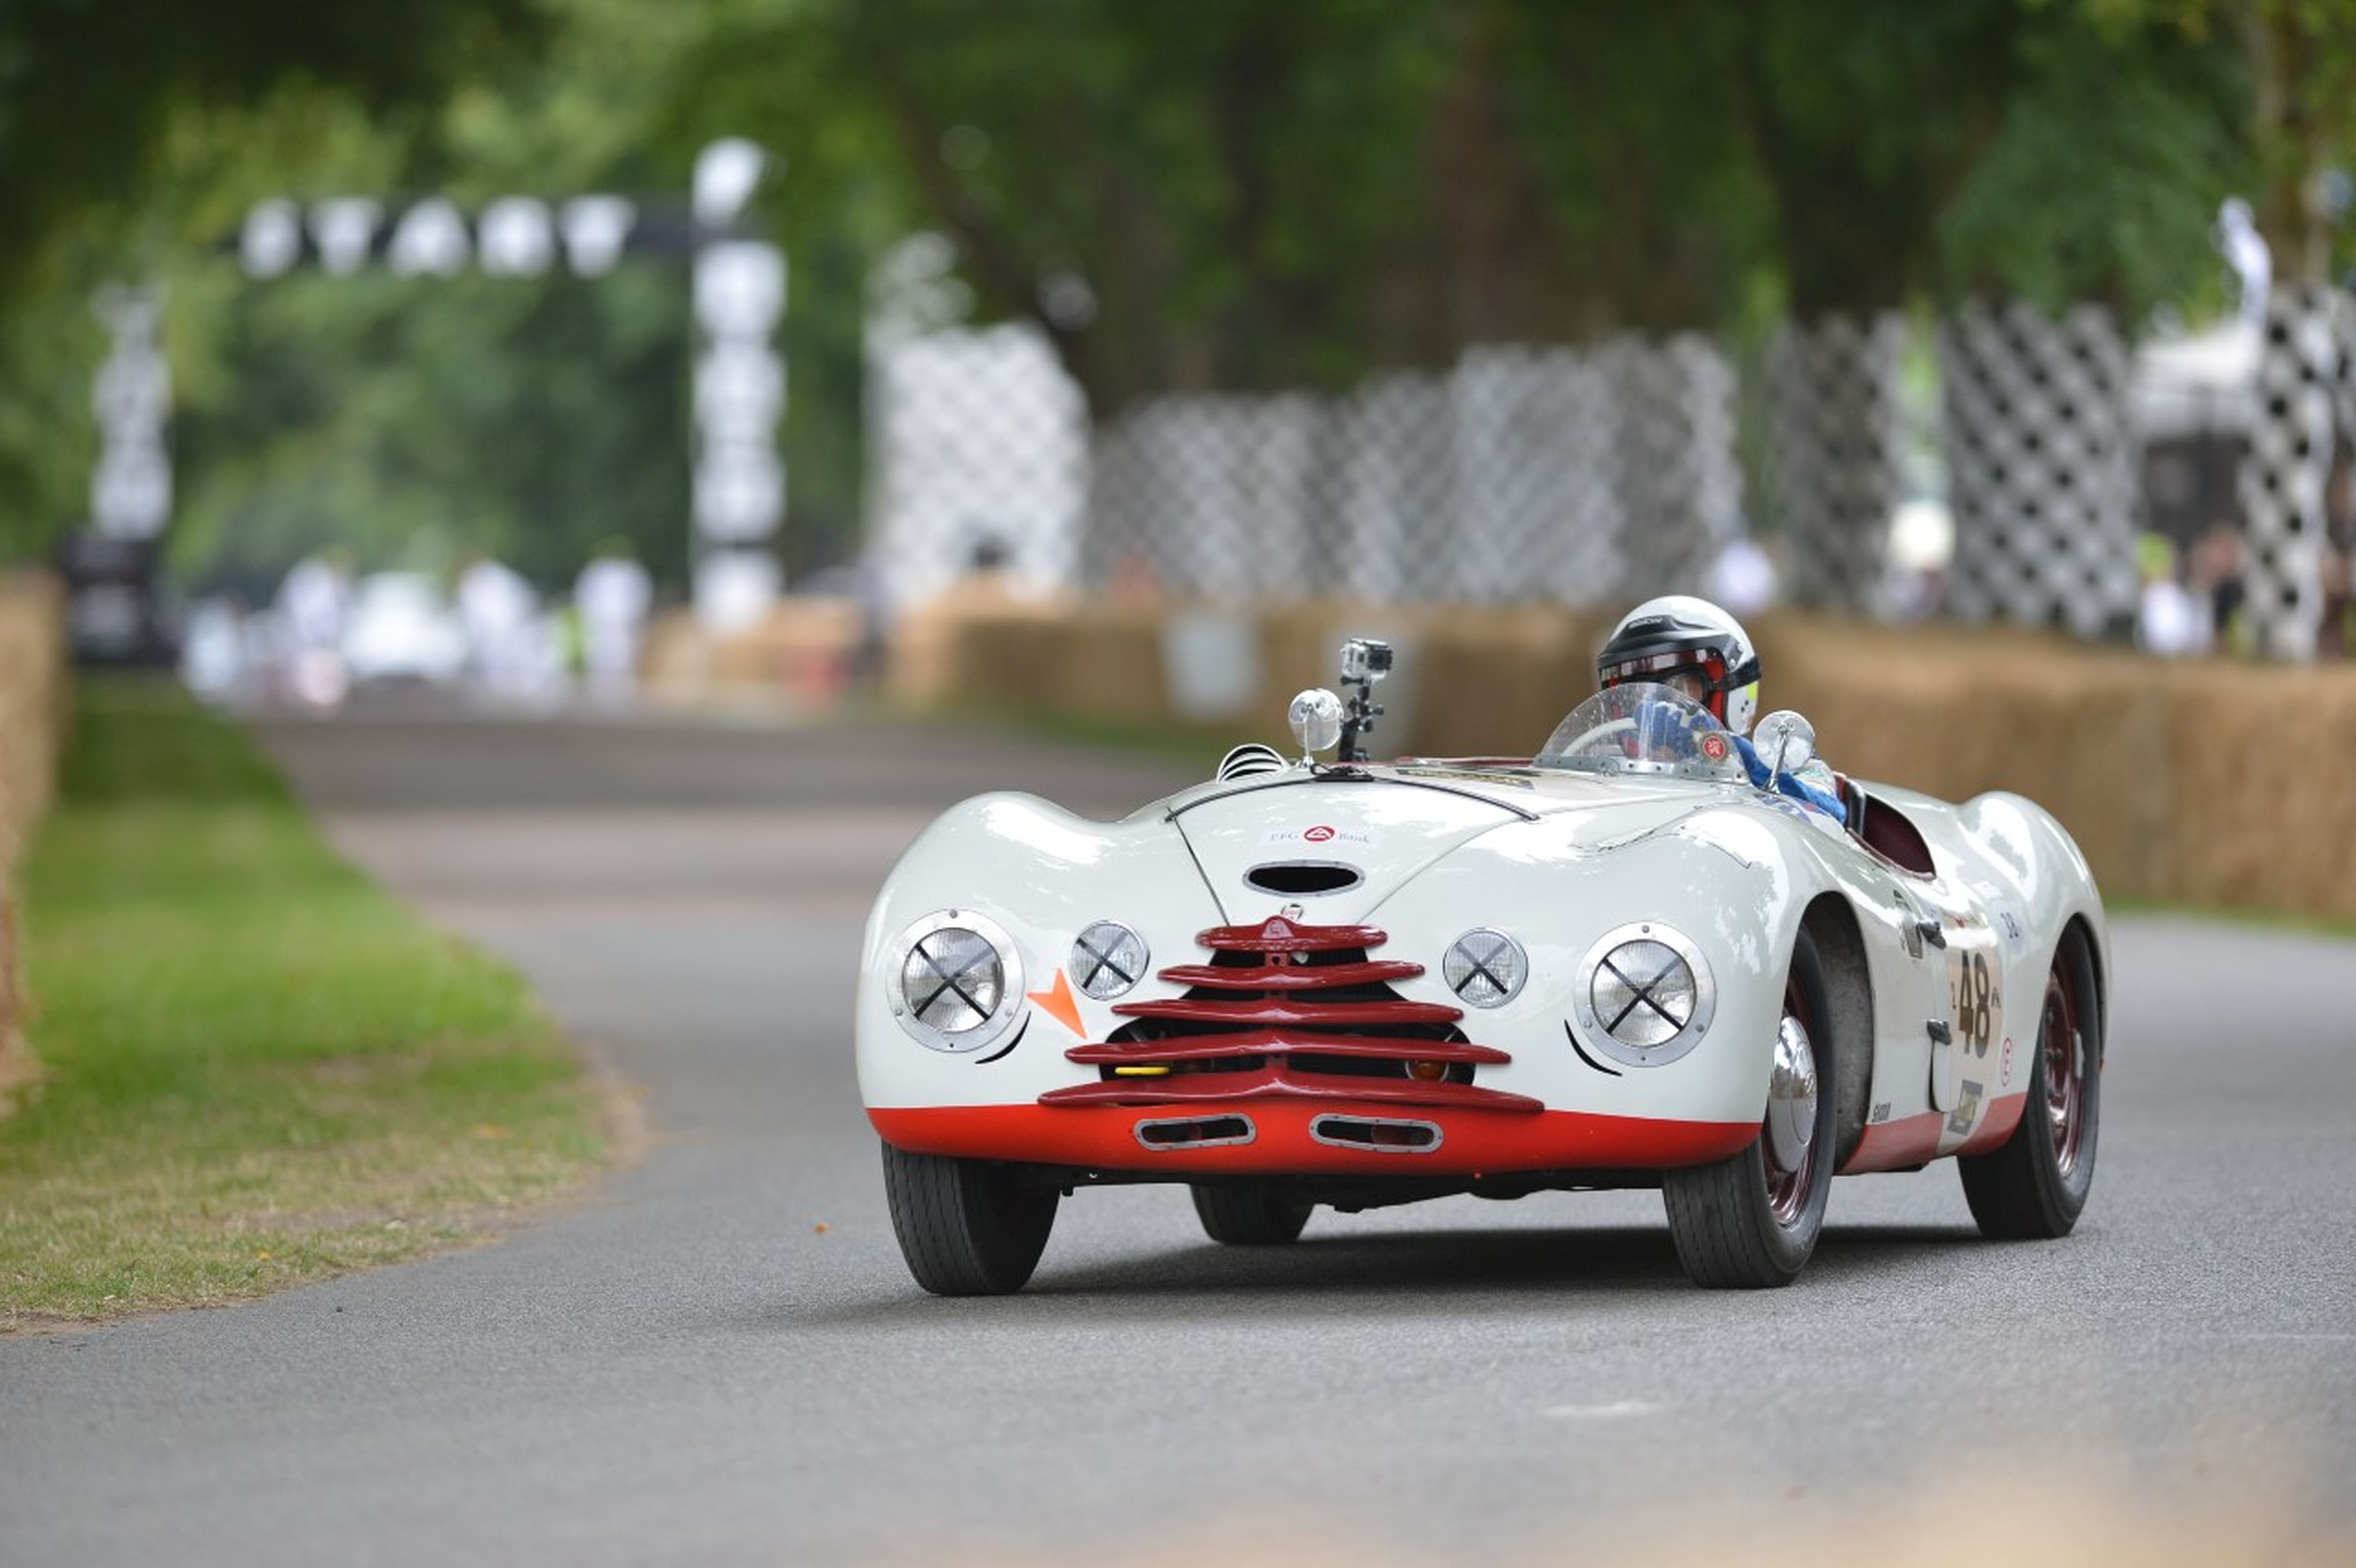 El Skoda Sport corrió las 24 Horas de Le Mans en 1950